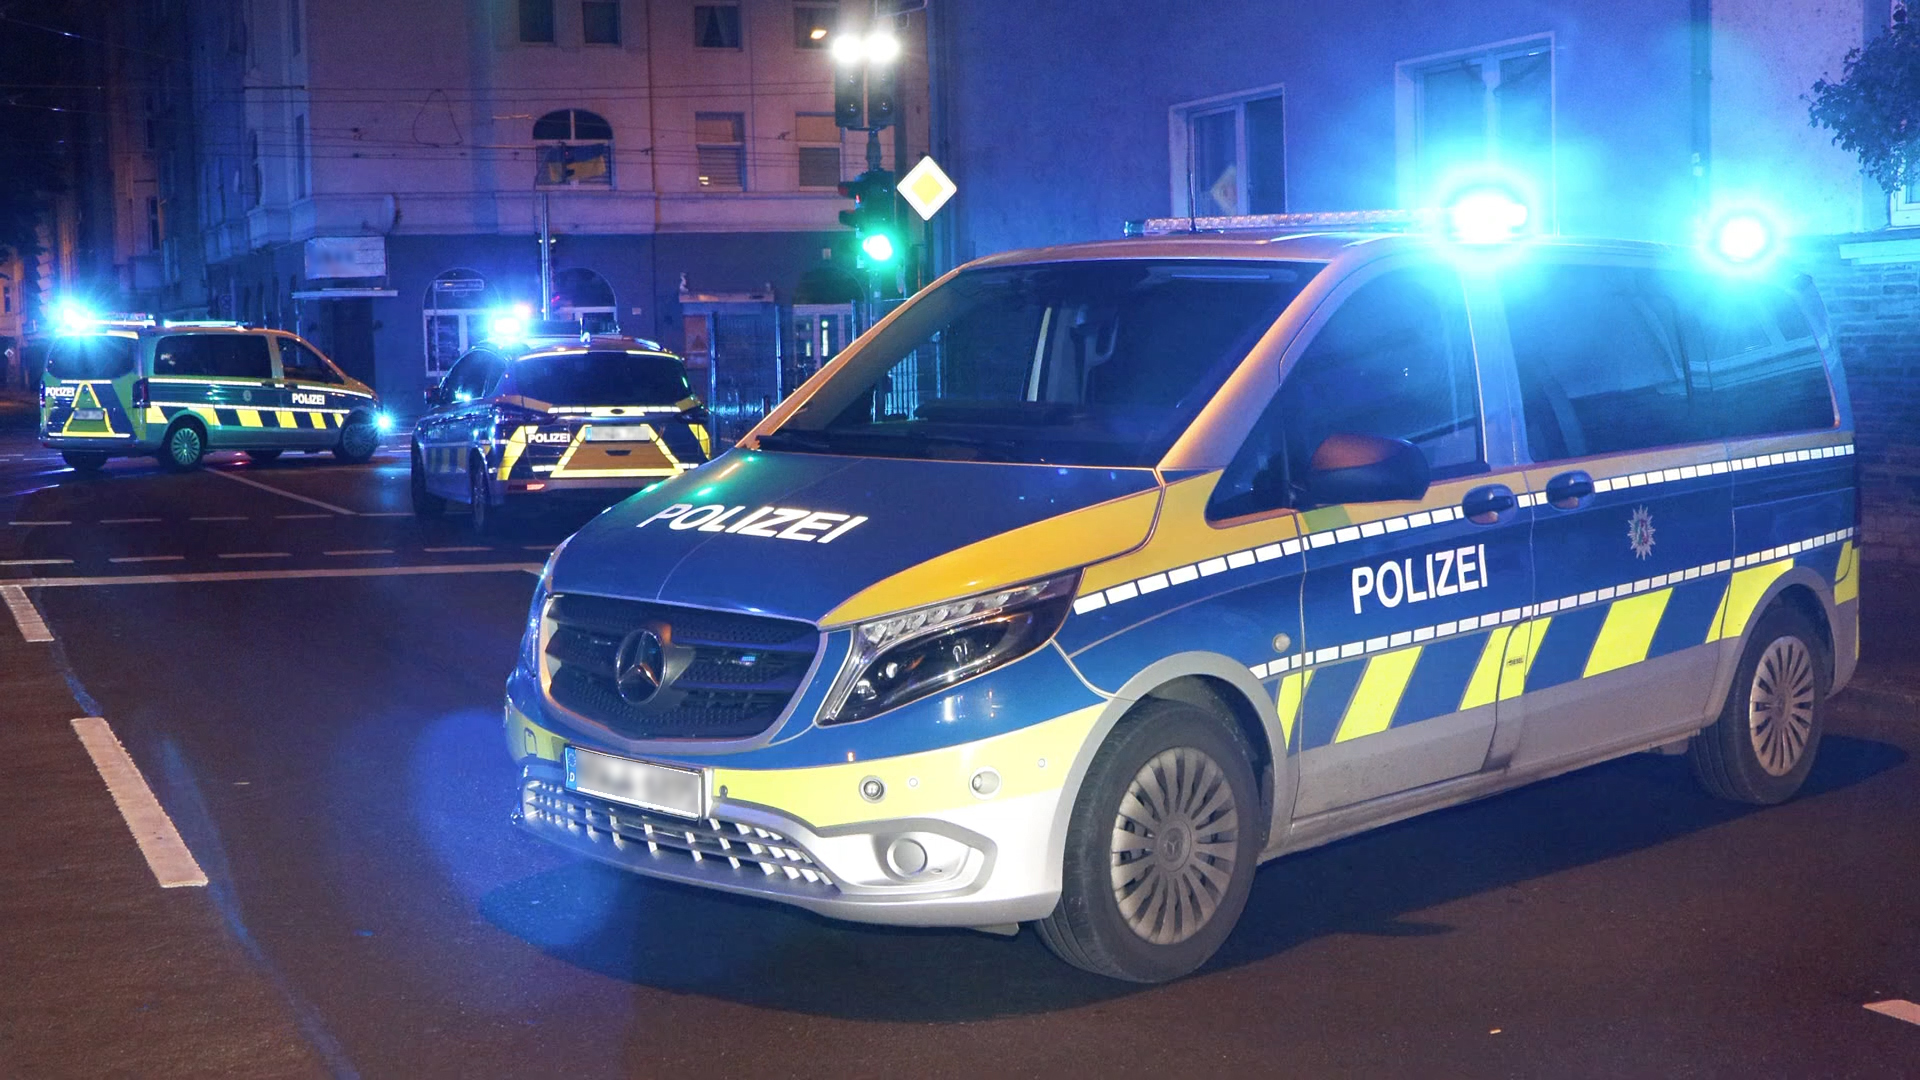 Polizei NRW Hagen - +++Wie sieht ein Polizeidienstausweis aus?+++Blau,  fälschungssicher und barrierefrei+++ Erst heute haben wir von einem  falschen Zivilpolizisten berichtet. Aber wie sieht so ein Dienstausweis  der Polizei eigentlich aus? Die